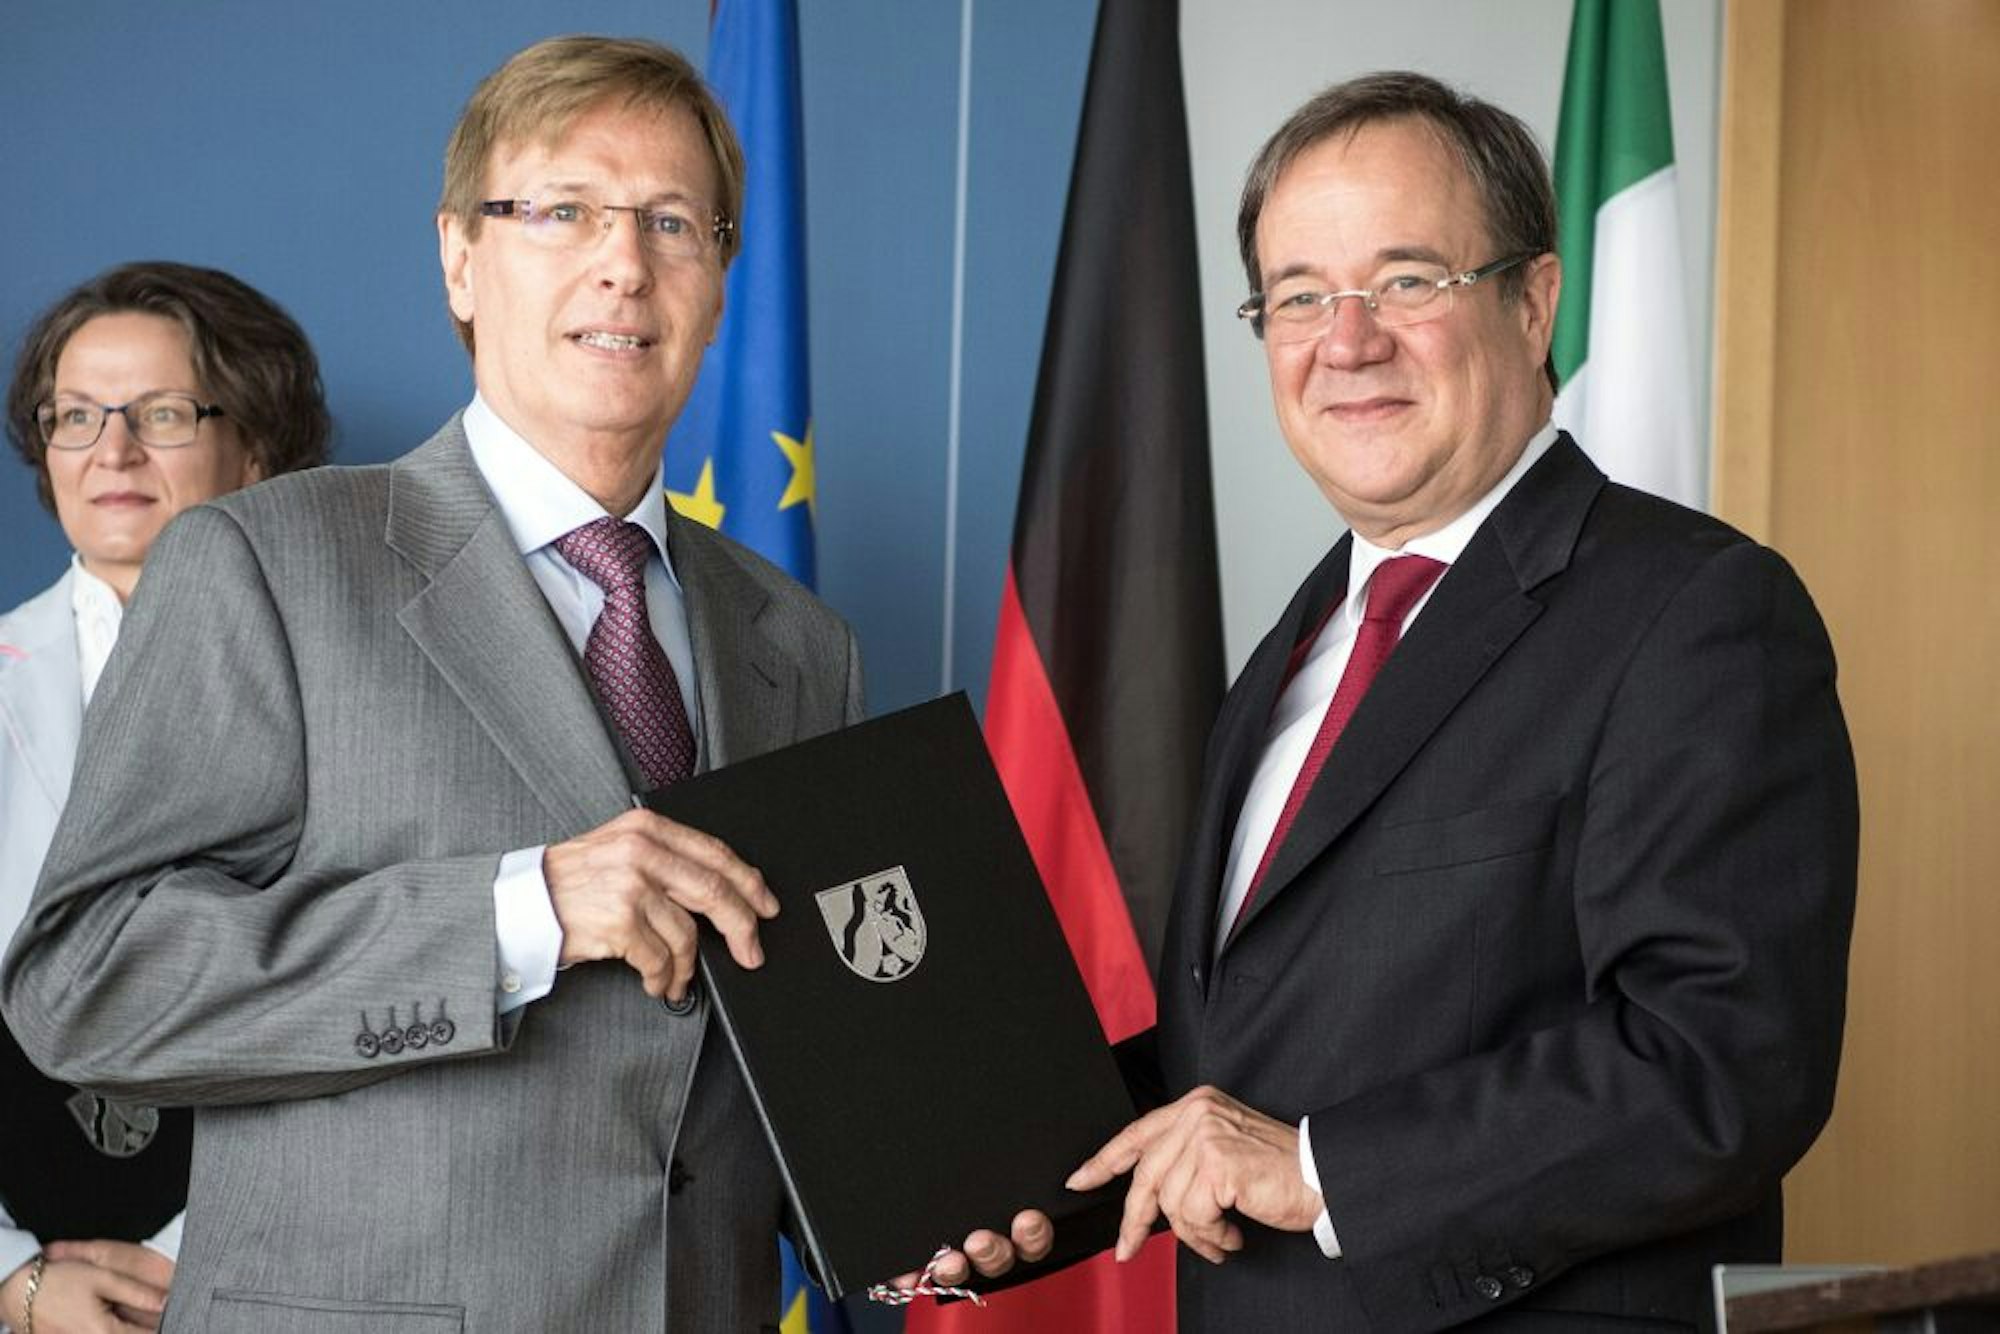 Justizminister Peter Biesenbach und Armin Laschet